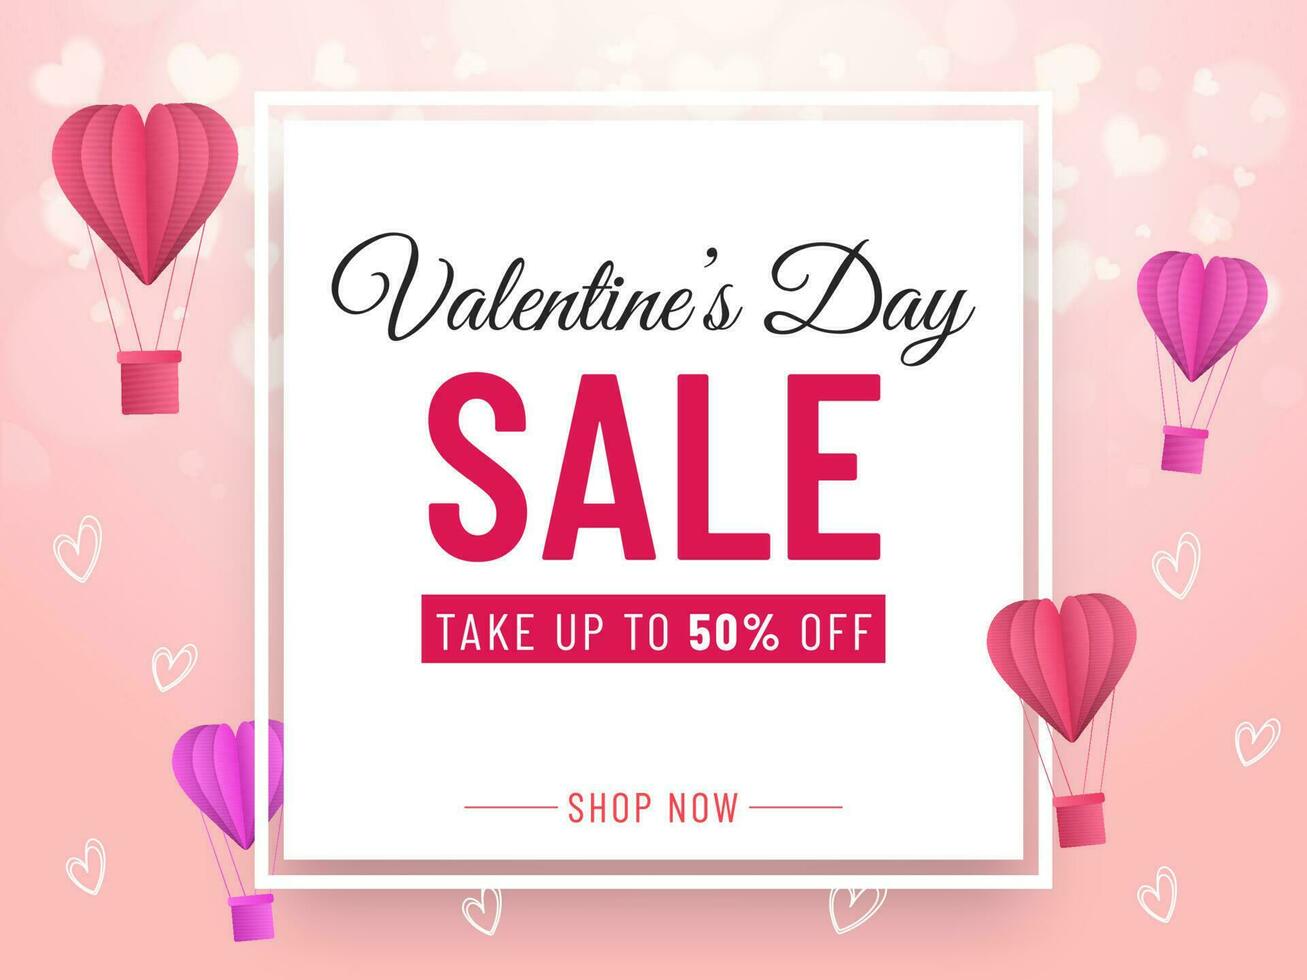 Valentinstag Tag Verkauf Banner Design mit Rabatt Angebot, Papier Schnitt heiß Luft Luftballons und Herzen dekoriert auf Rosa Hintergrund. vektor